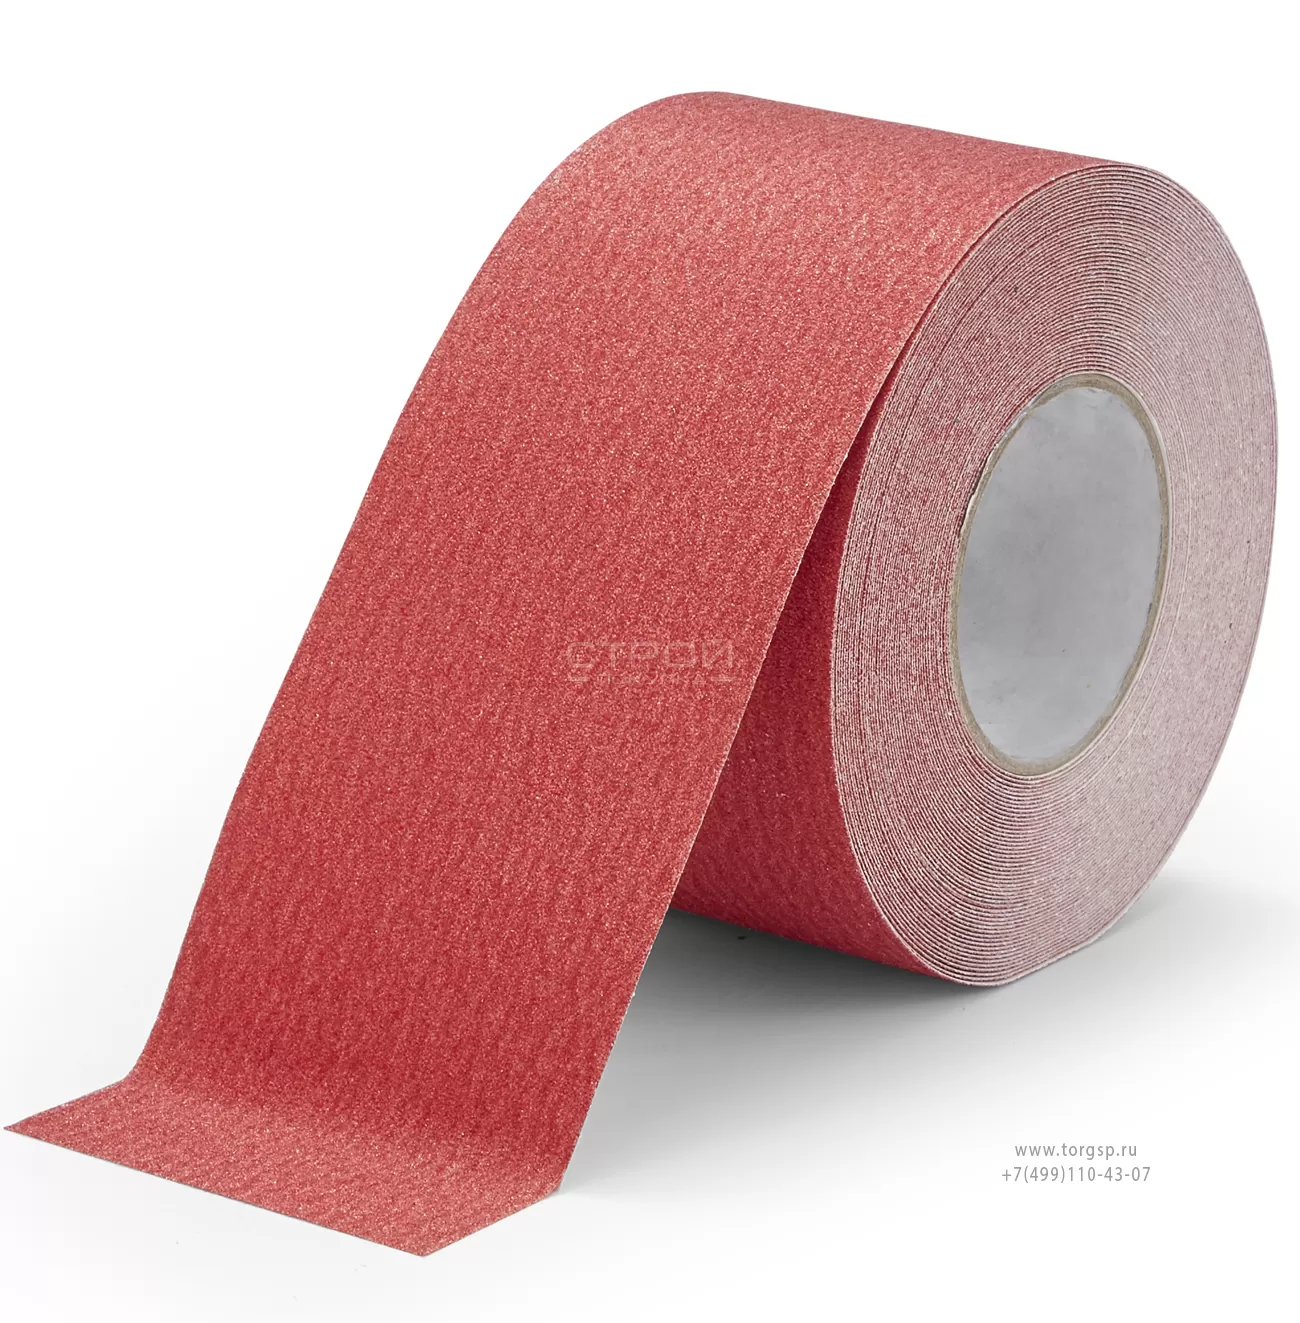 Красная абразивная противоскользящая лента Heskins шириной 10 см